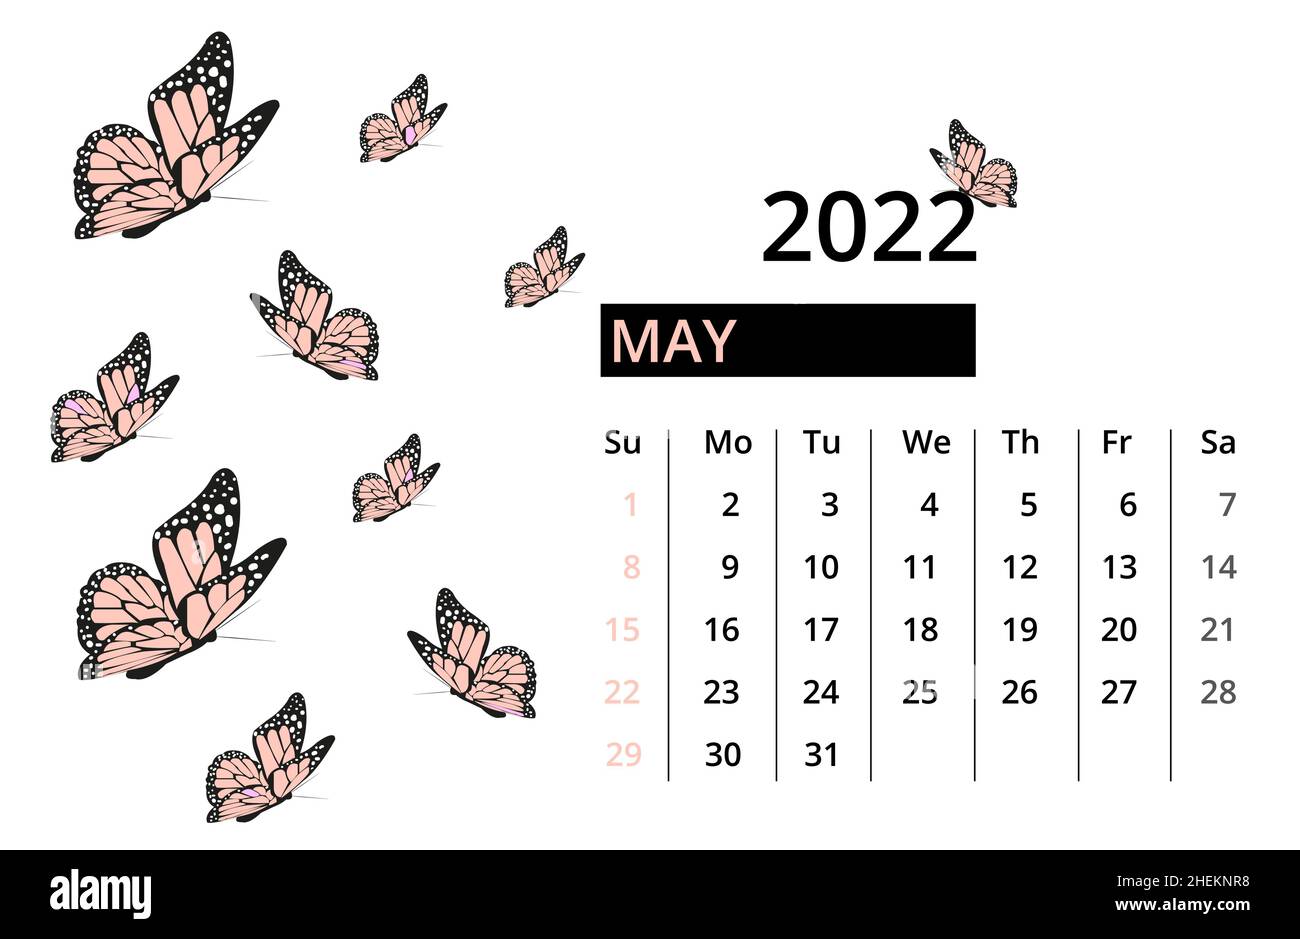 Lịch bàn tháng 5 năm 2022 với bướm tạo cảm giác thanh bình, tĩnh lặng và vô cùng dễ chịu. Với hình ảnh bướm đầy màu sắc điểm tô, lịch tháng này không chỉ giúp bạn hạn chế stress, mà còn giúp bạn tập trung hơn vào công việc đấy!